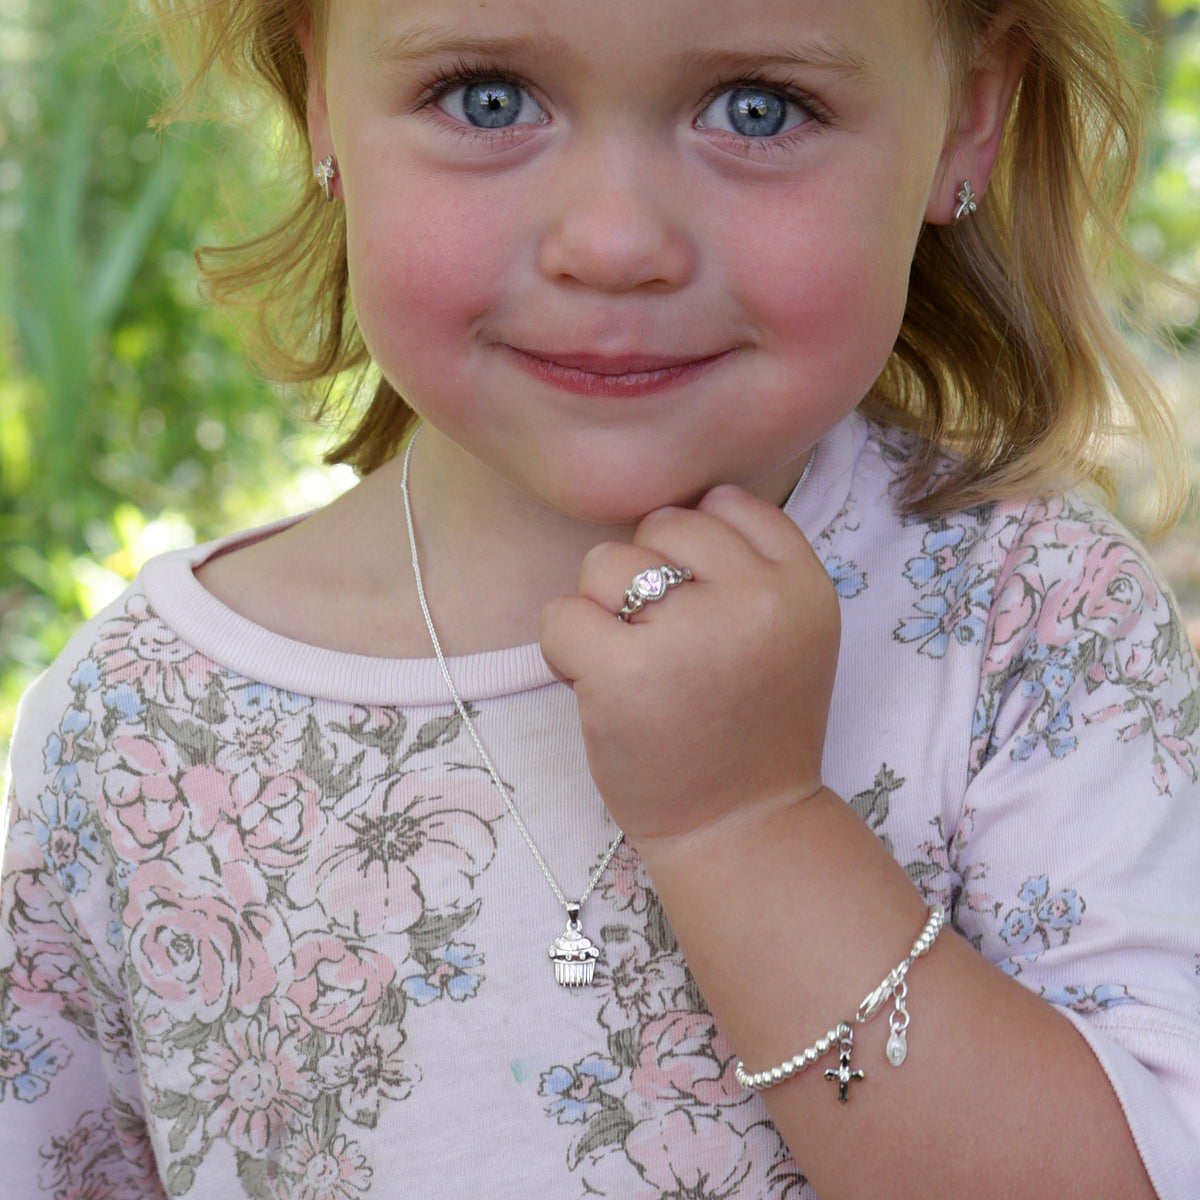 Letter Charm H Kids / Children's / Girls for Charm Bracelet - Sterling